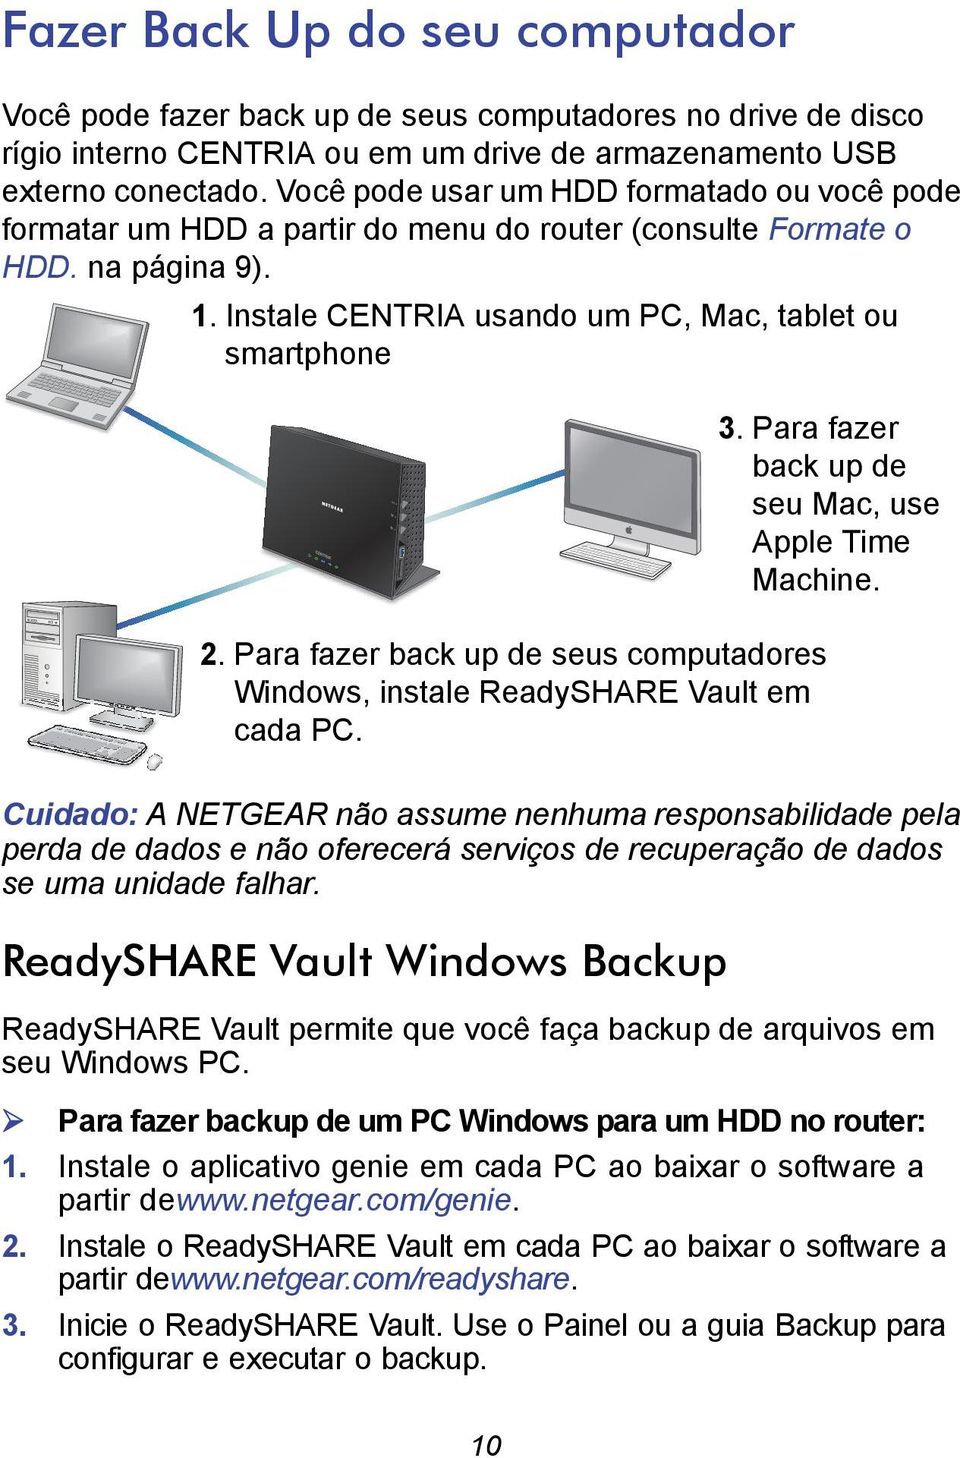 Para fazer back up de seus computadores Windows, instale ReadySHARE Vault em cada PC. 3. Para fazer back up de seu Mac, use Apple Time Machine.